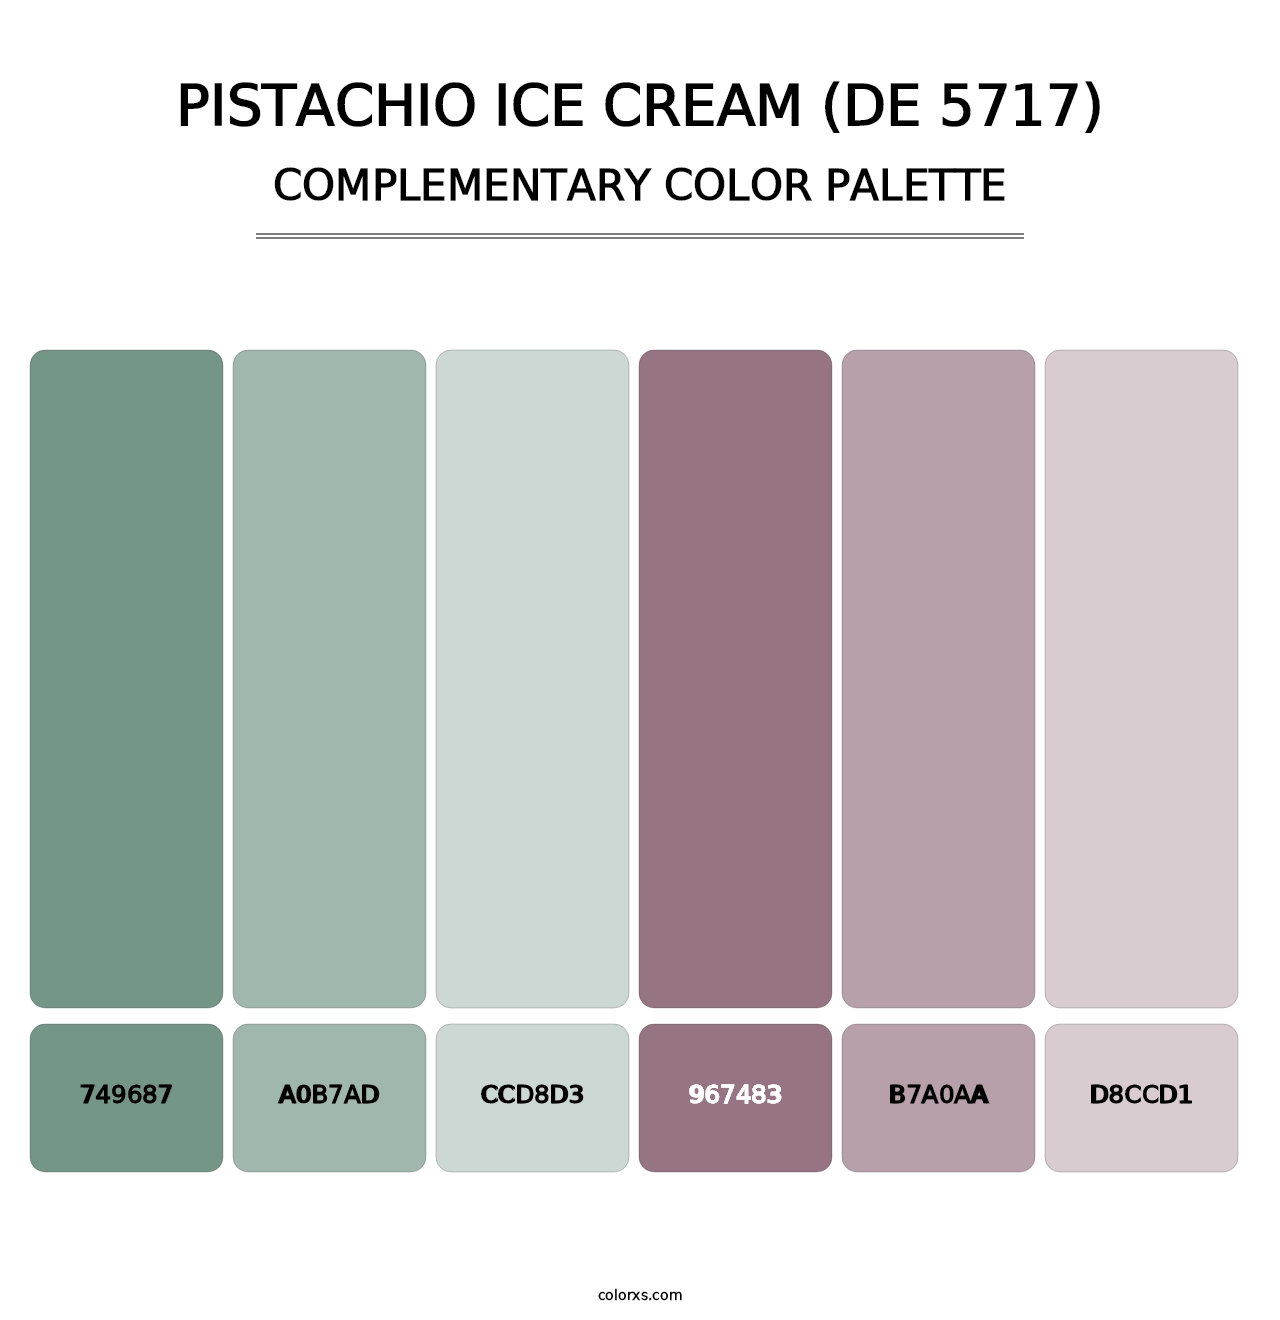 Pistachio Ice Cream (DE 5717) - Complementary Color Palette